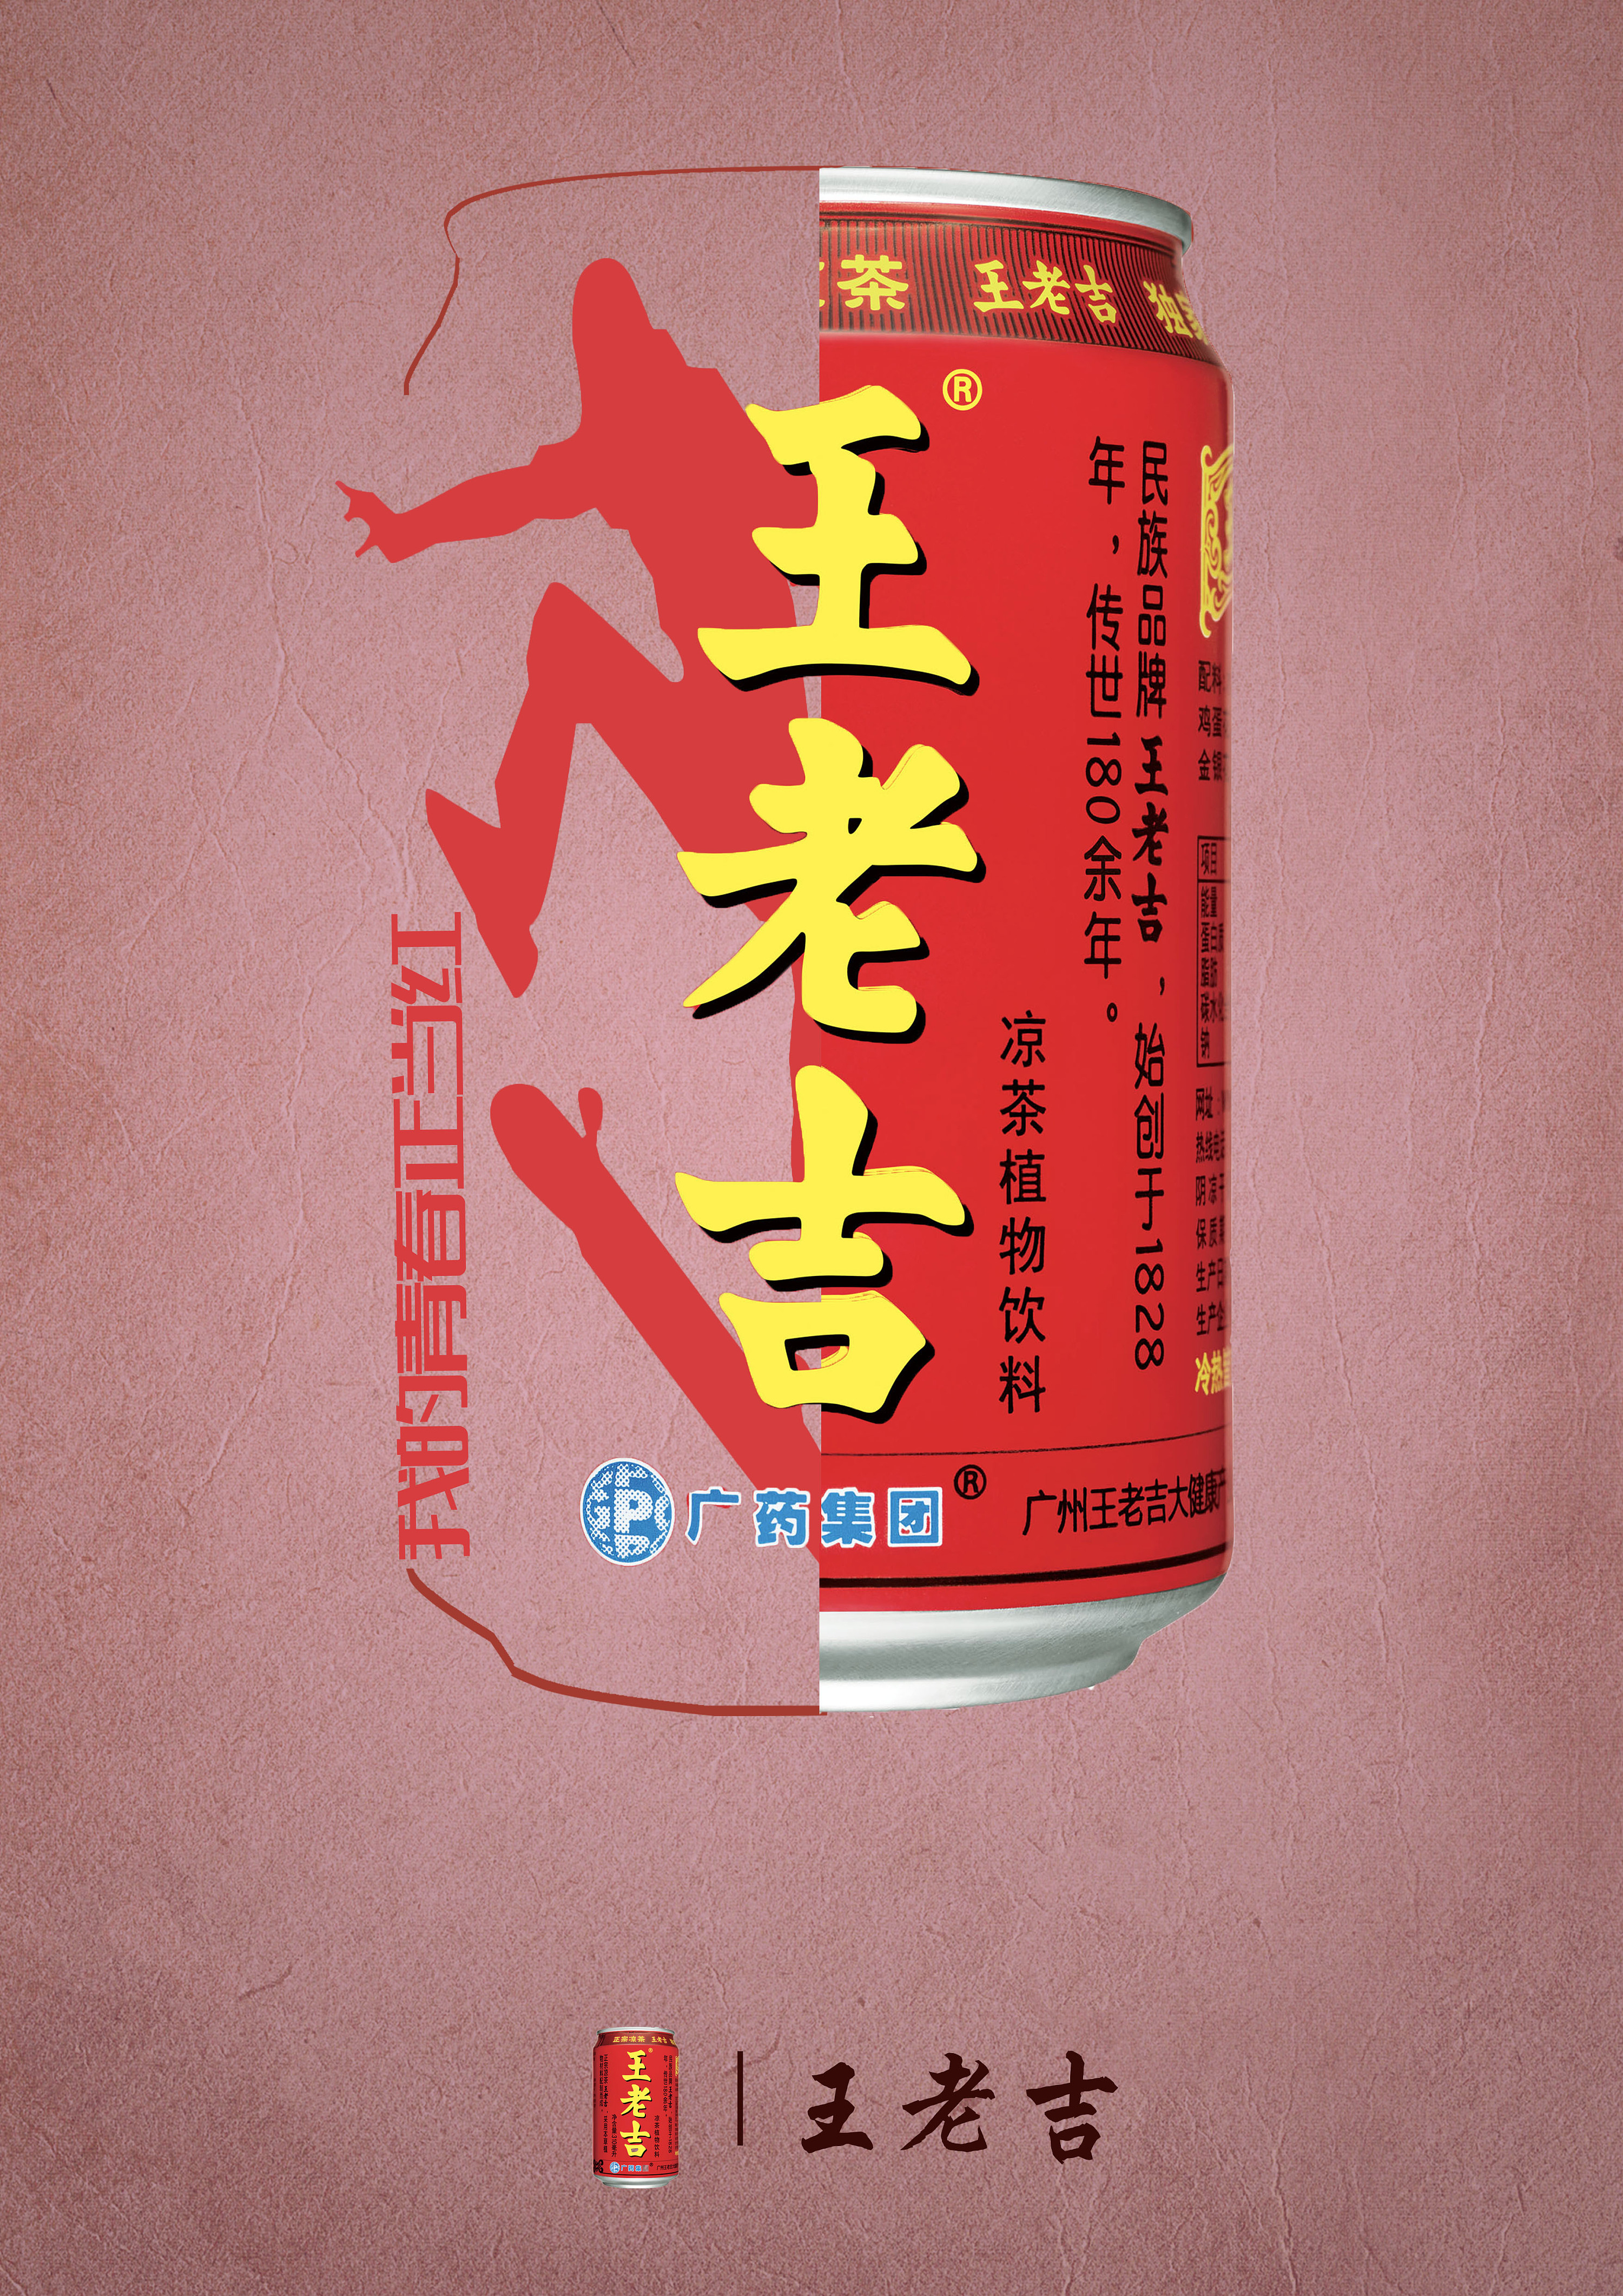 王老吉广告创意分析图片